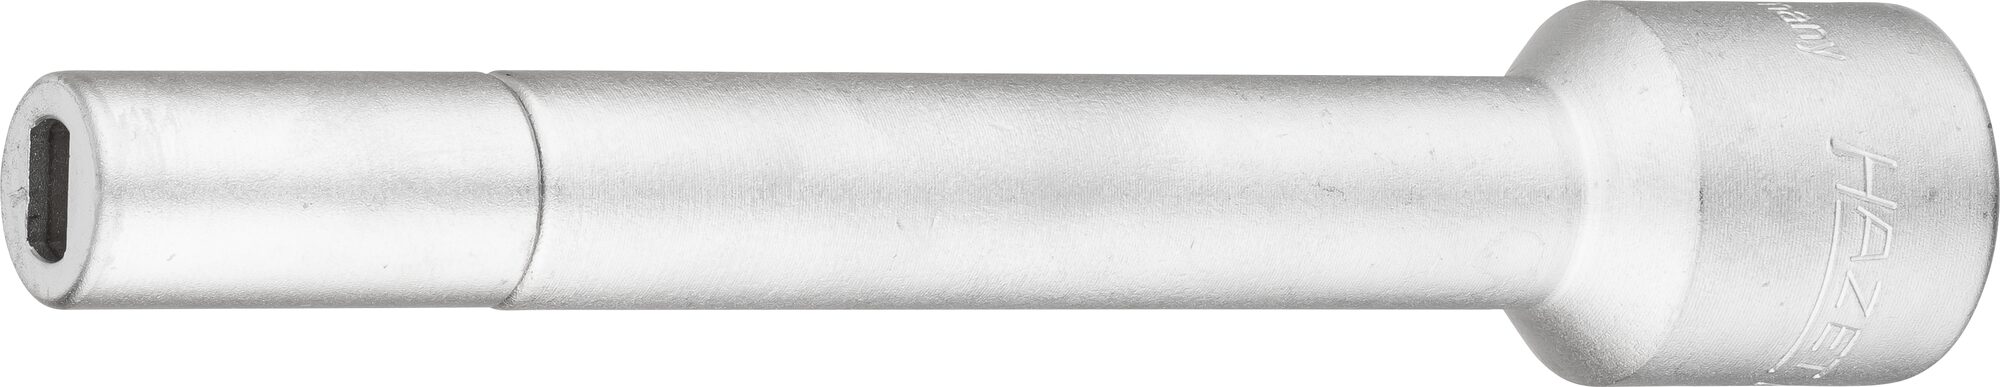 HAZET Verlängerung 4910-58 · Vierkant hohl 12,5 mm (1/2 Zoll) · Zapfenprofil hohl · für Zapfenprofil 5 x 8 mm